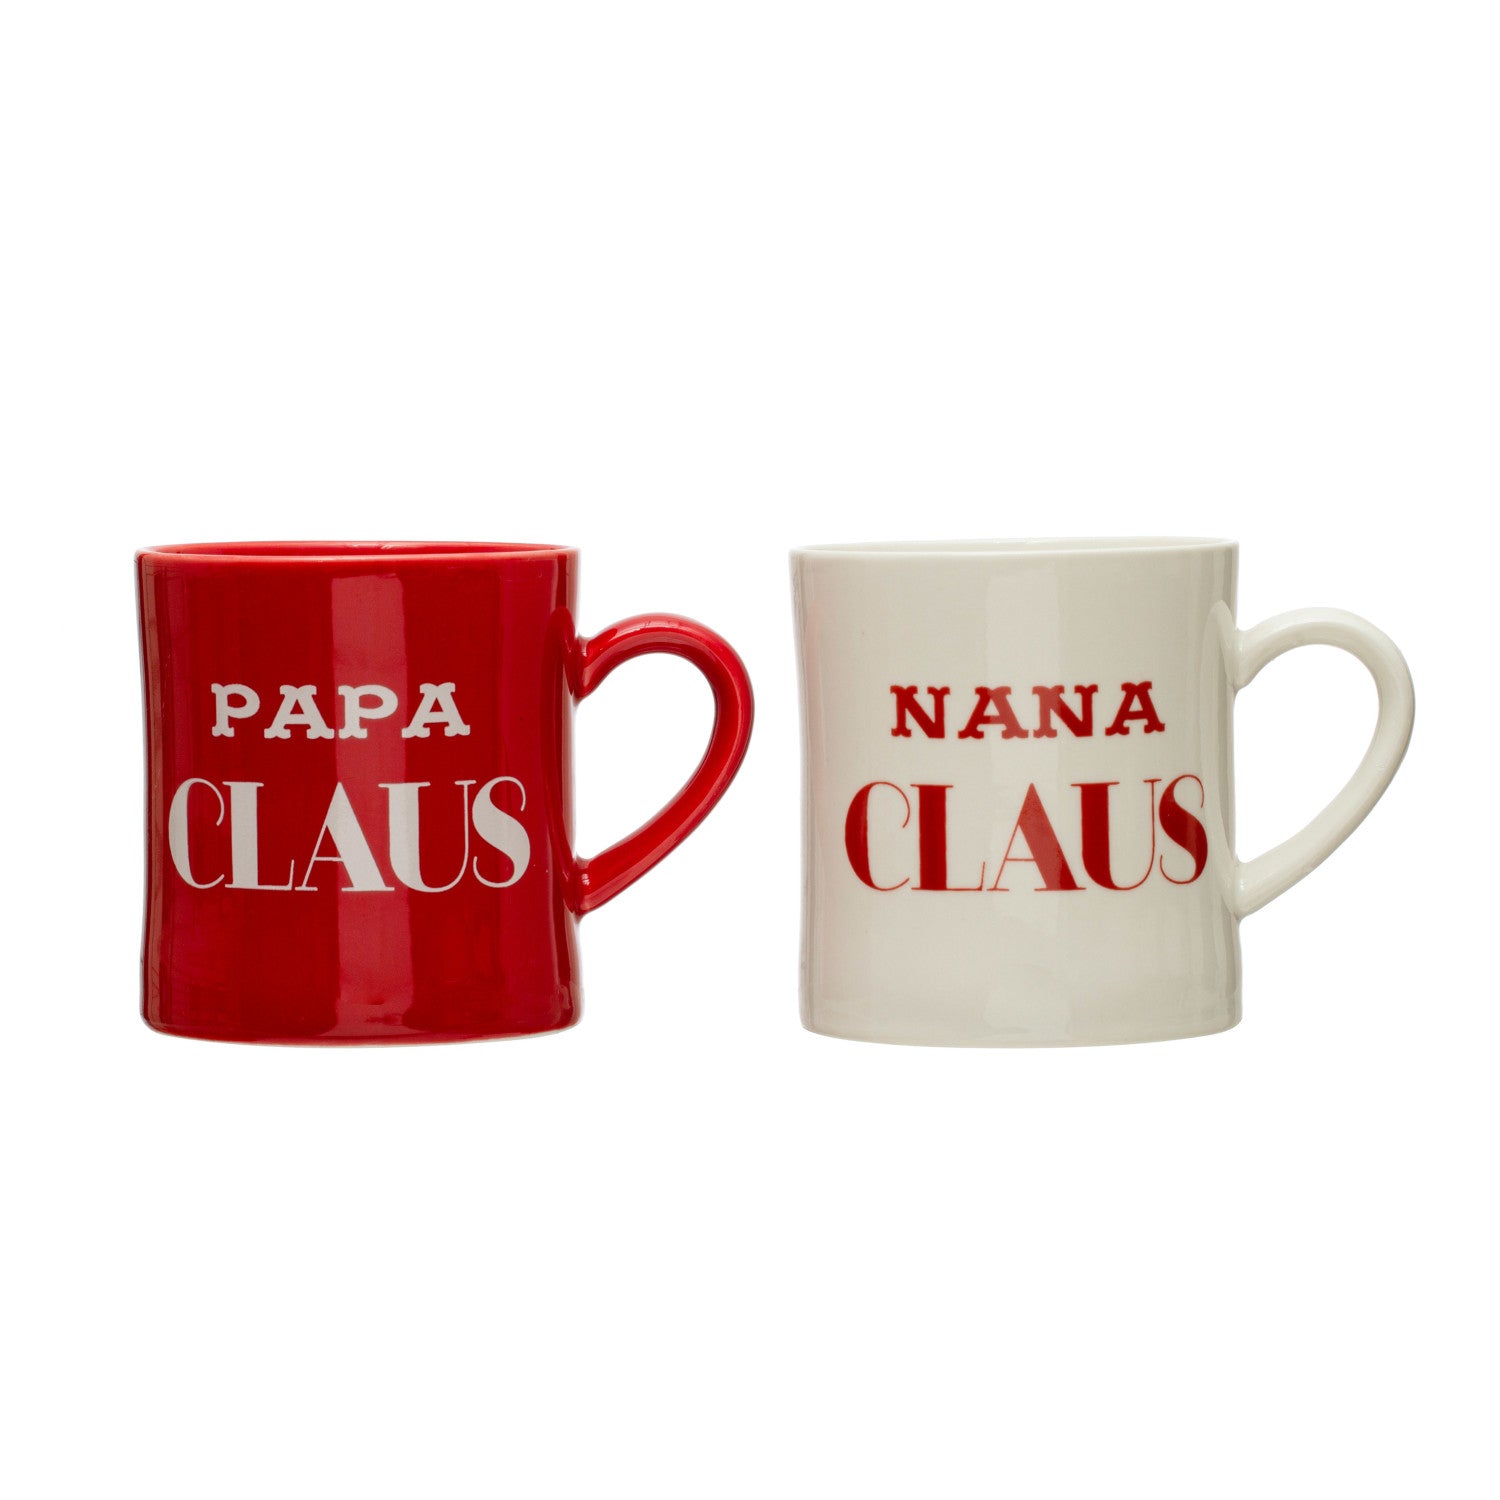 Nana and Papa Claus Mugs